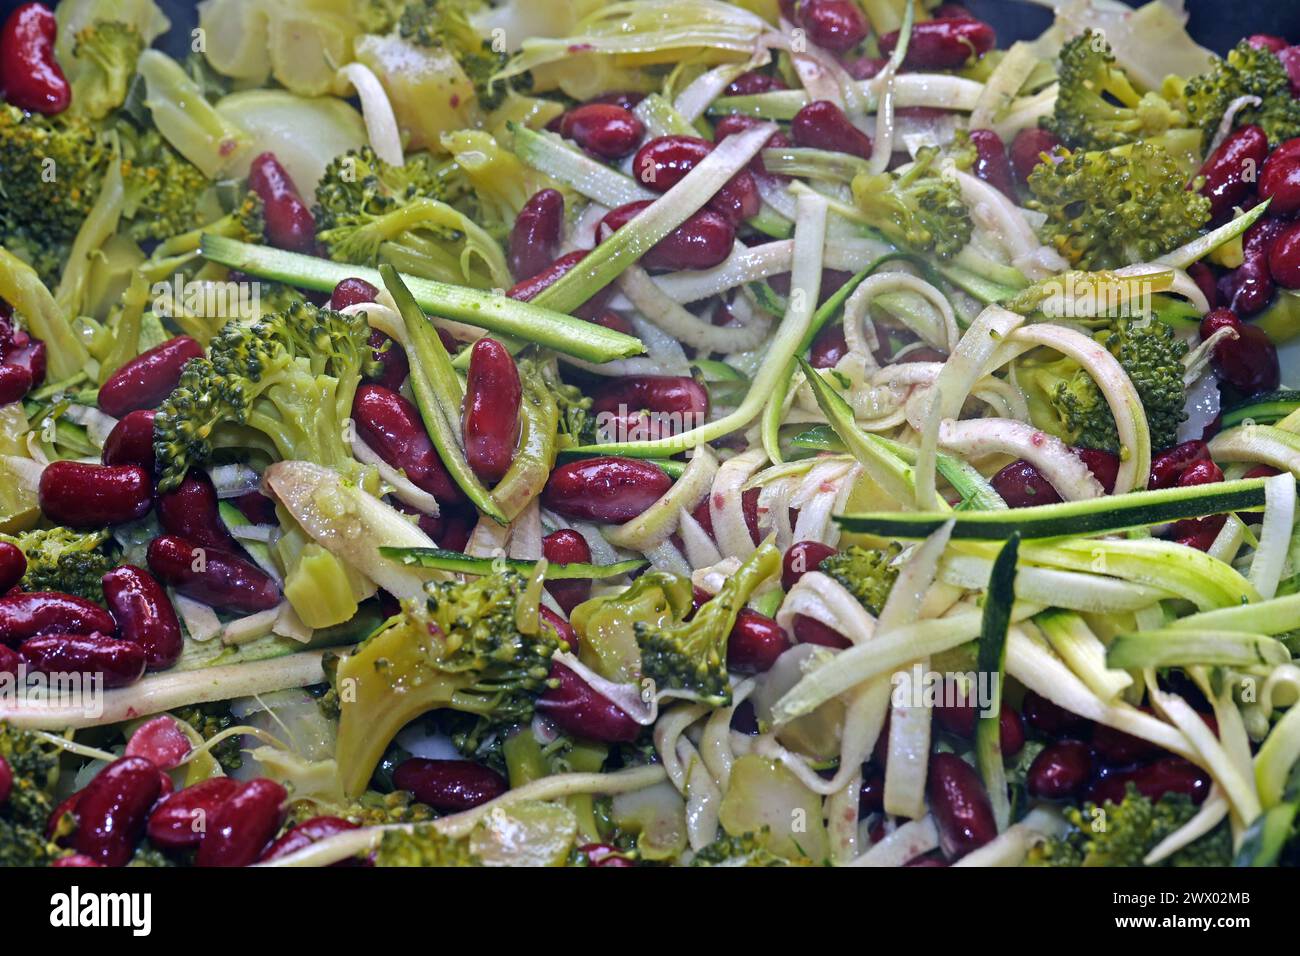 Gemüseküche ohne Fleisch Brokkoli, Zuccini und Kidneybohnen während der Zubereitung in einer Bratpfanne *** Gemüseküche ohne Fleisch Brokkoli, Zucchini und Kidneybohnen während der Zubereitung in einer Bratpfanne Stockfoto